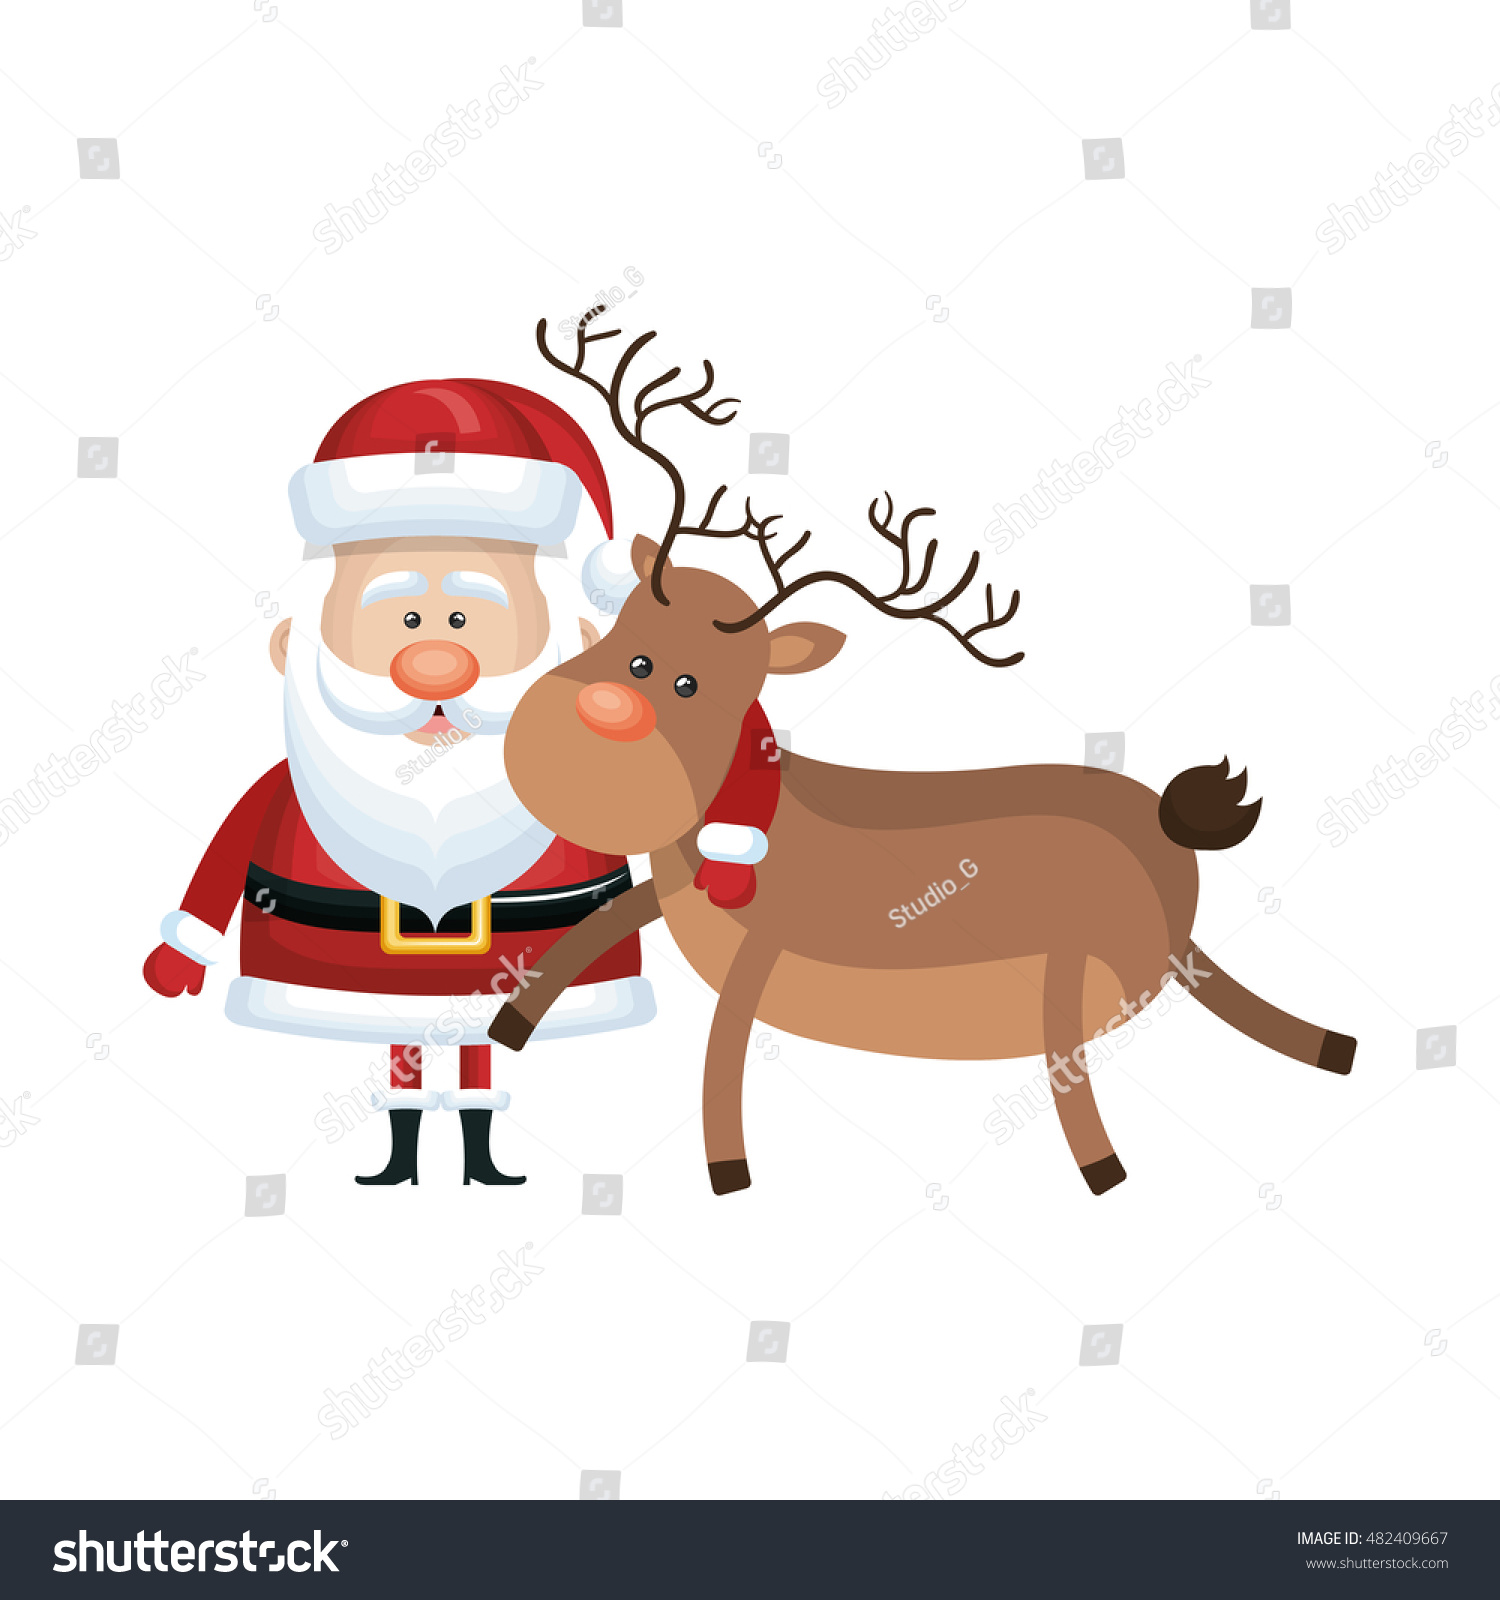 Santa Claus Cartoon Stock Vector Illustration 482409667 : Shutterstock